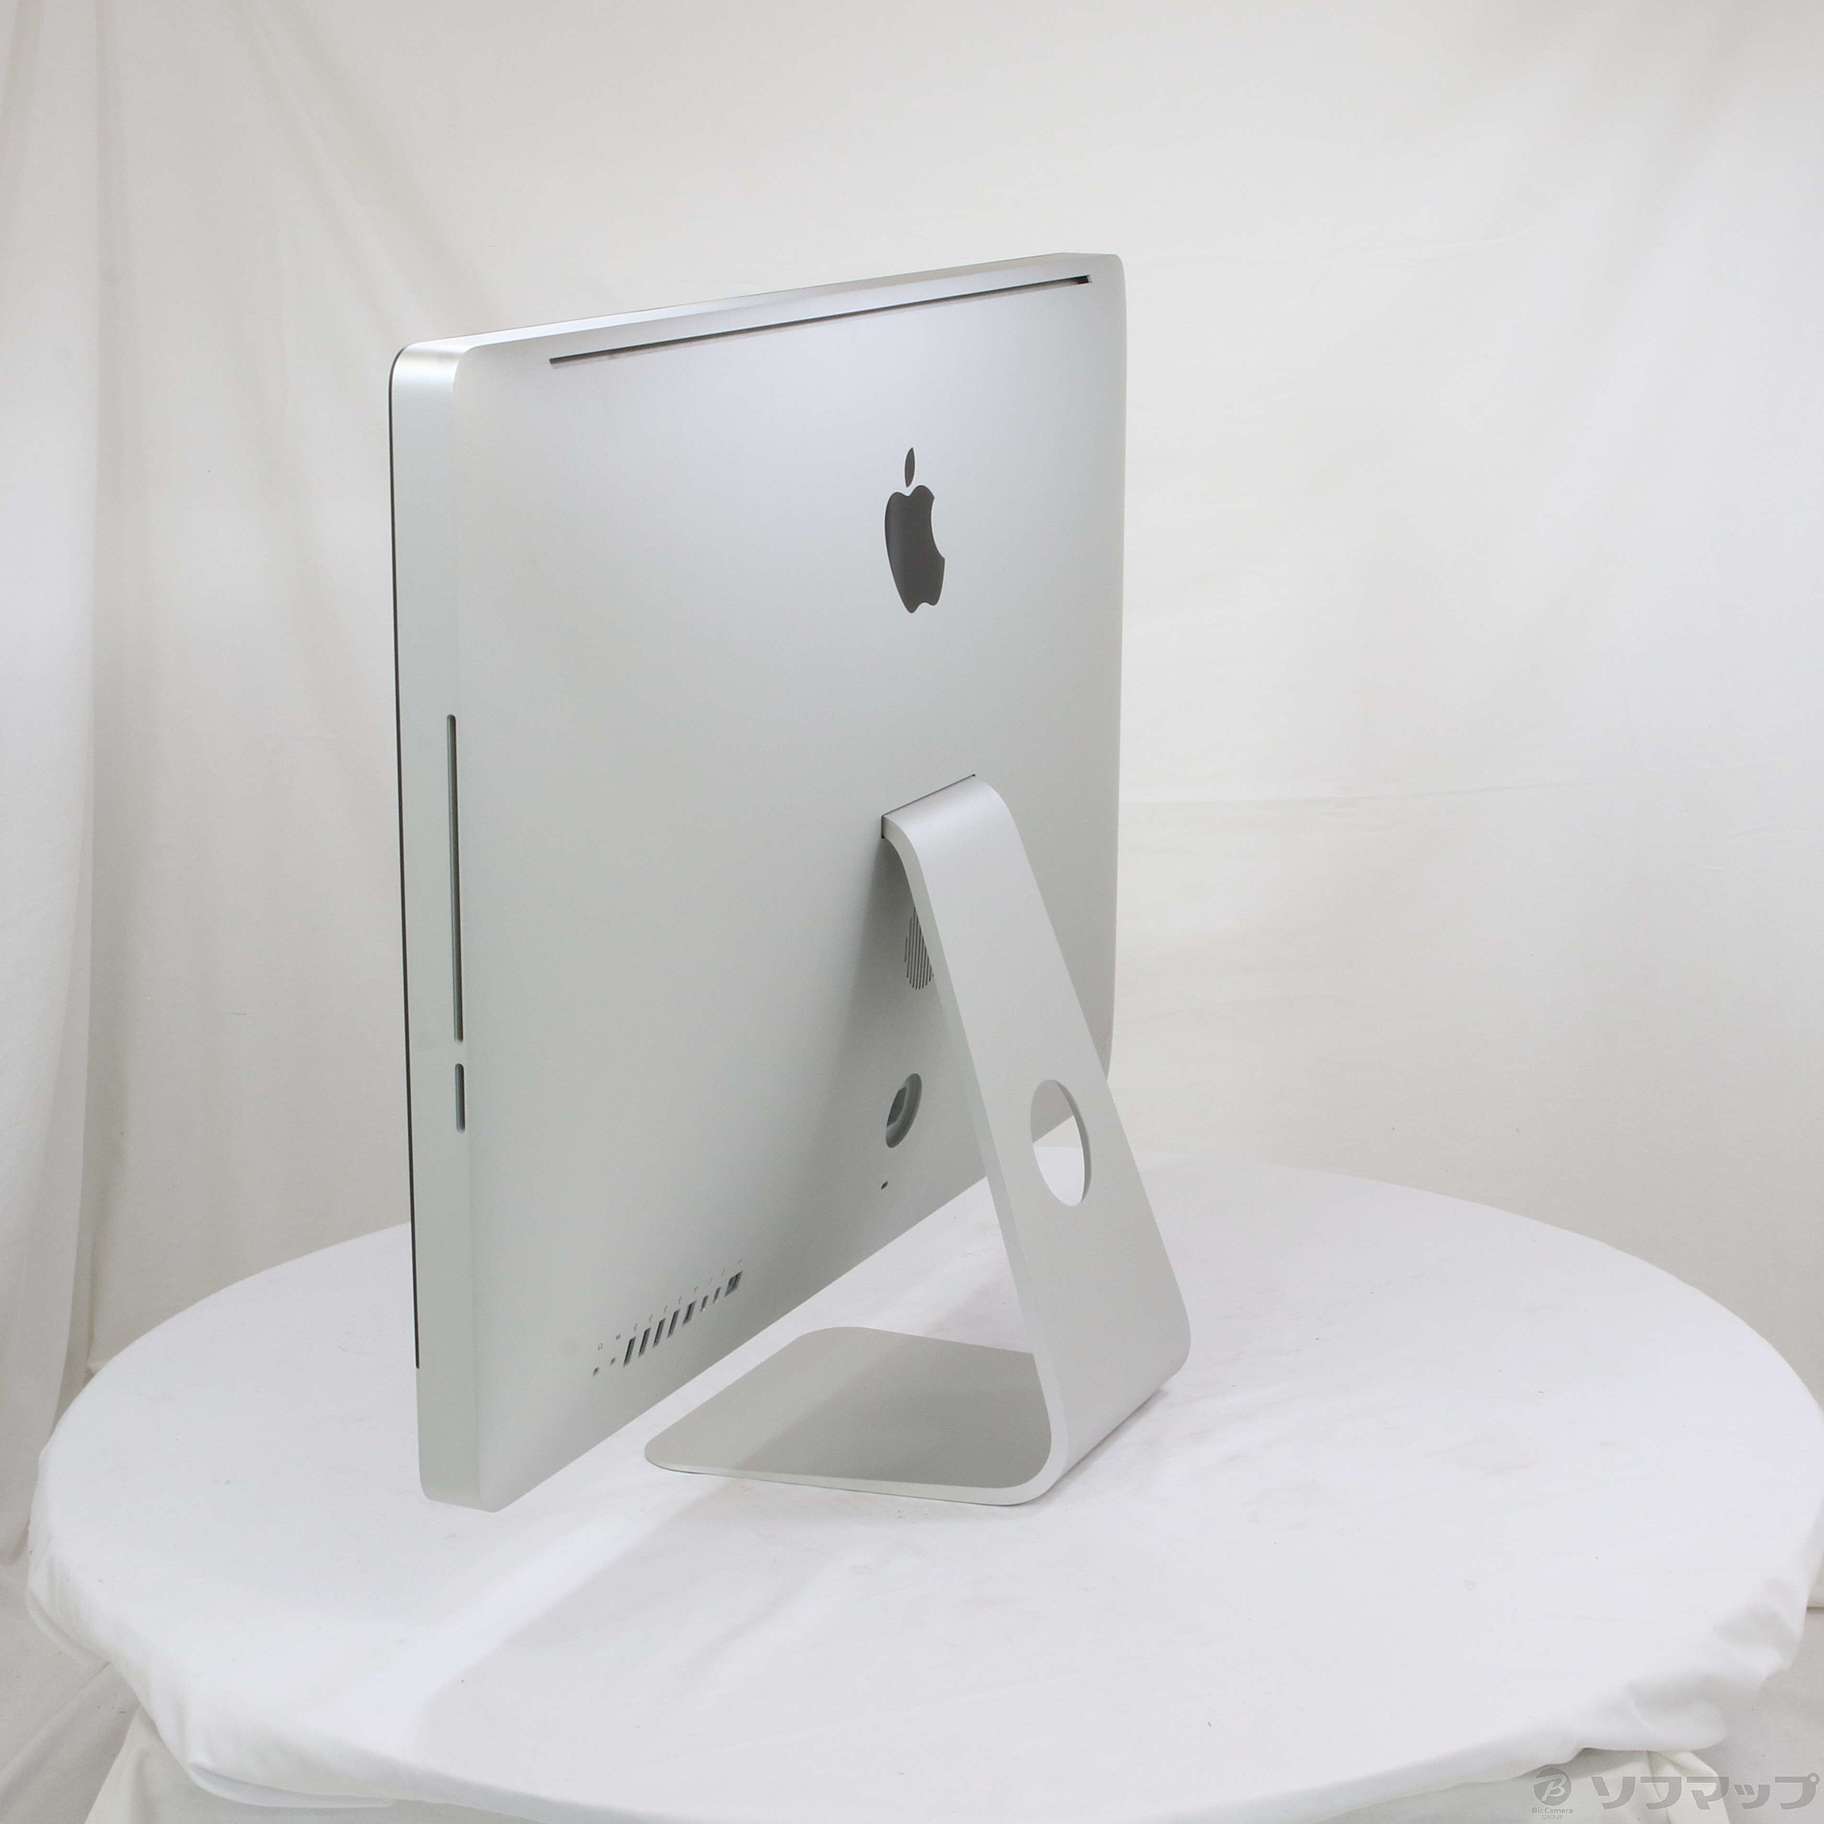 iMac パソコン 2011 - デスクトップ型PC